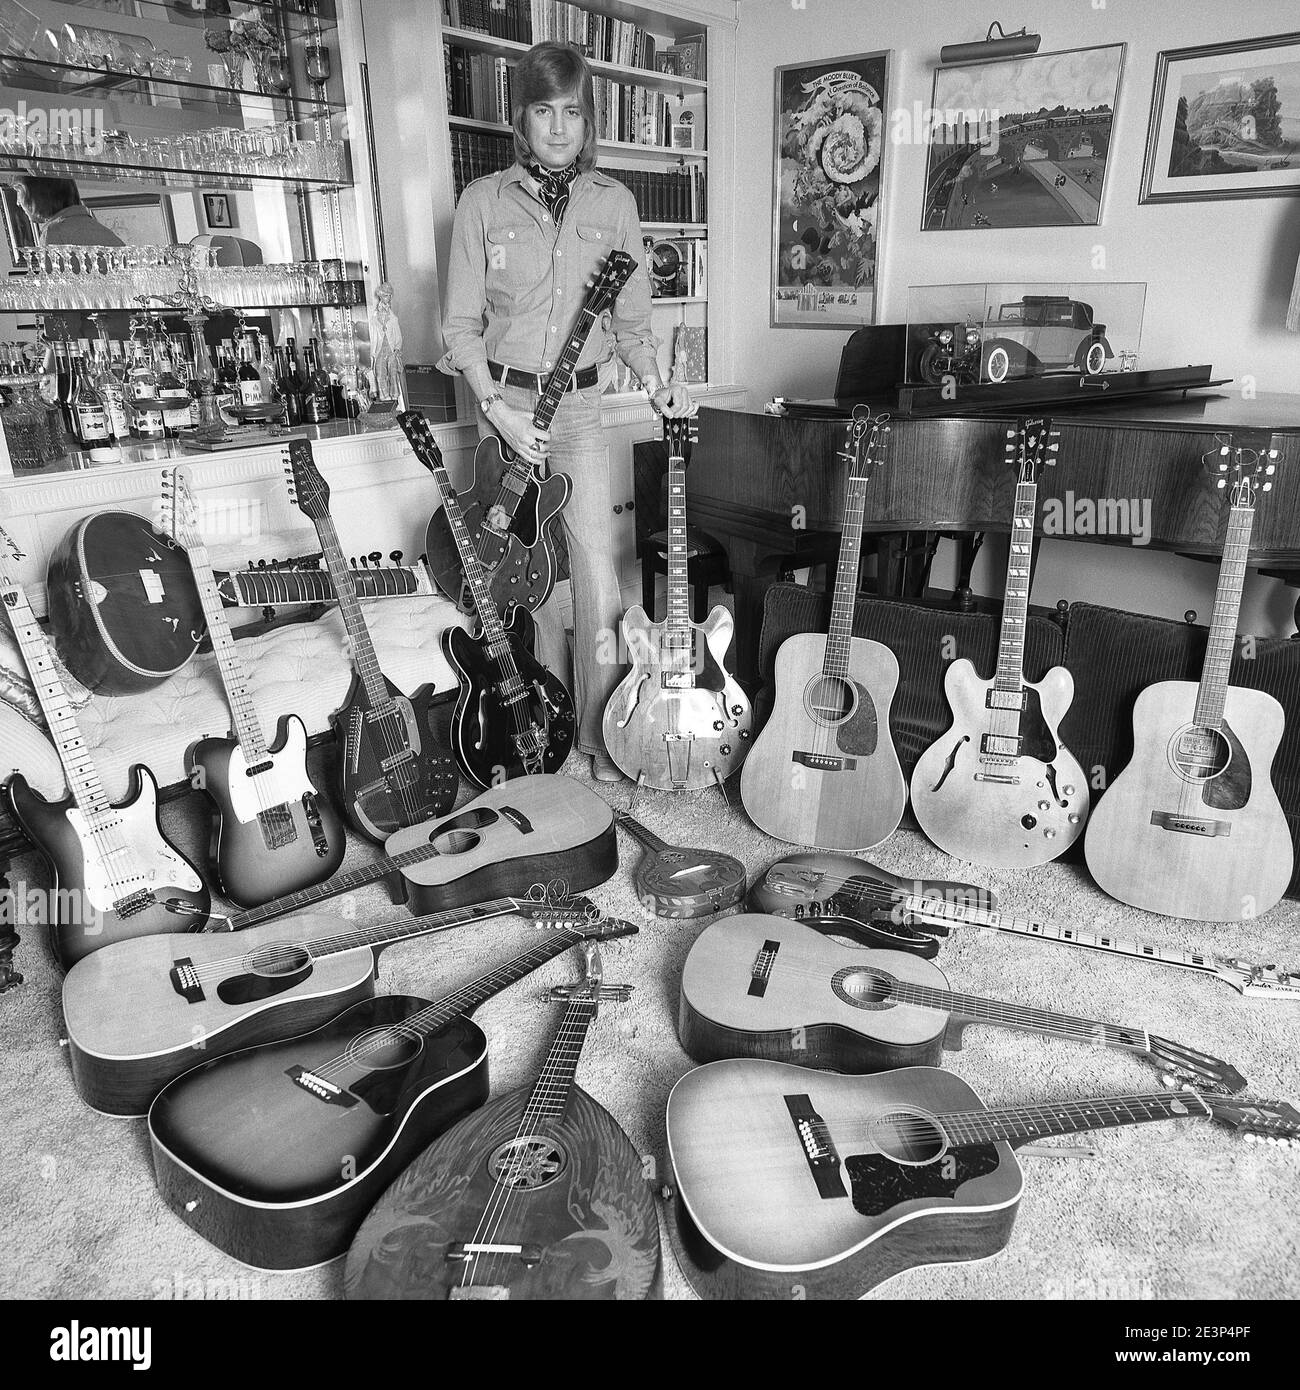 Justin Hayward von der britischen Rockband 'The Moody Blues' zu Hause mit seiner Gitarrensammlung. 03/1977 Stockfoto